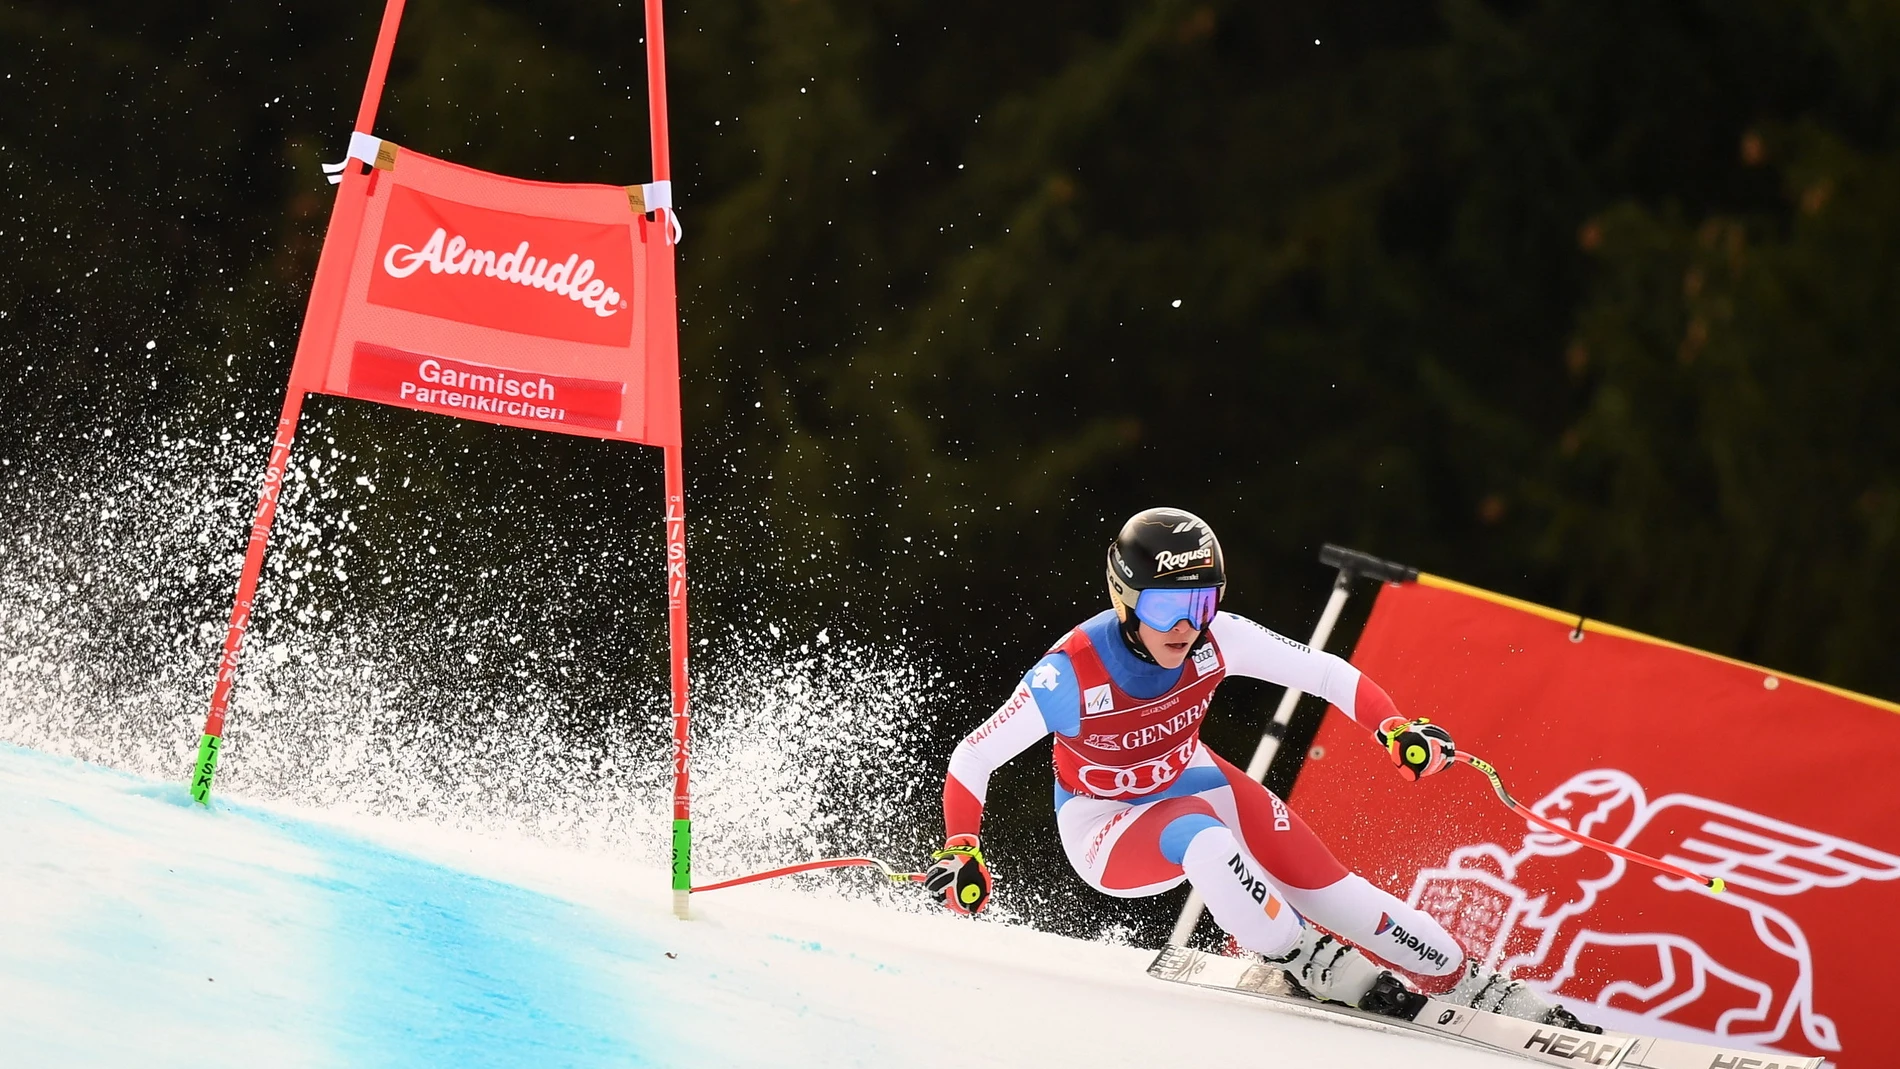 La suiza Lara Gut-Behrami camino de ganar la carrera femenina de Súper G de la Copa del Mundo de Esquí Alpino en Garmisch-Partenkirchen, Alemania, el 30 de enero de 2021. EFE/EPA/Philipp Guelland